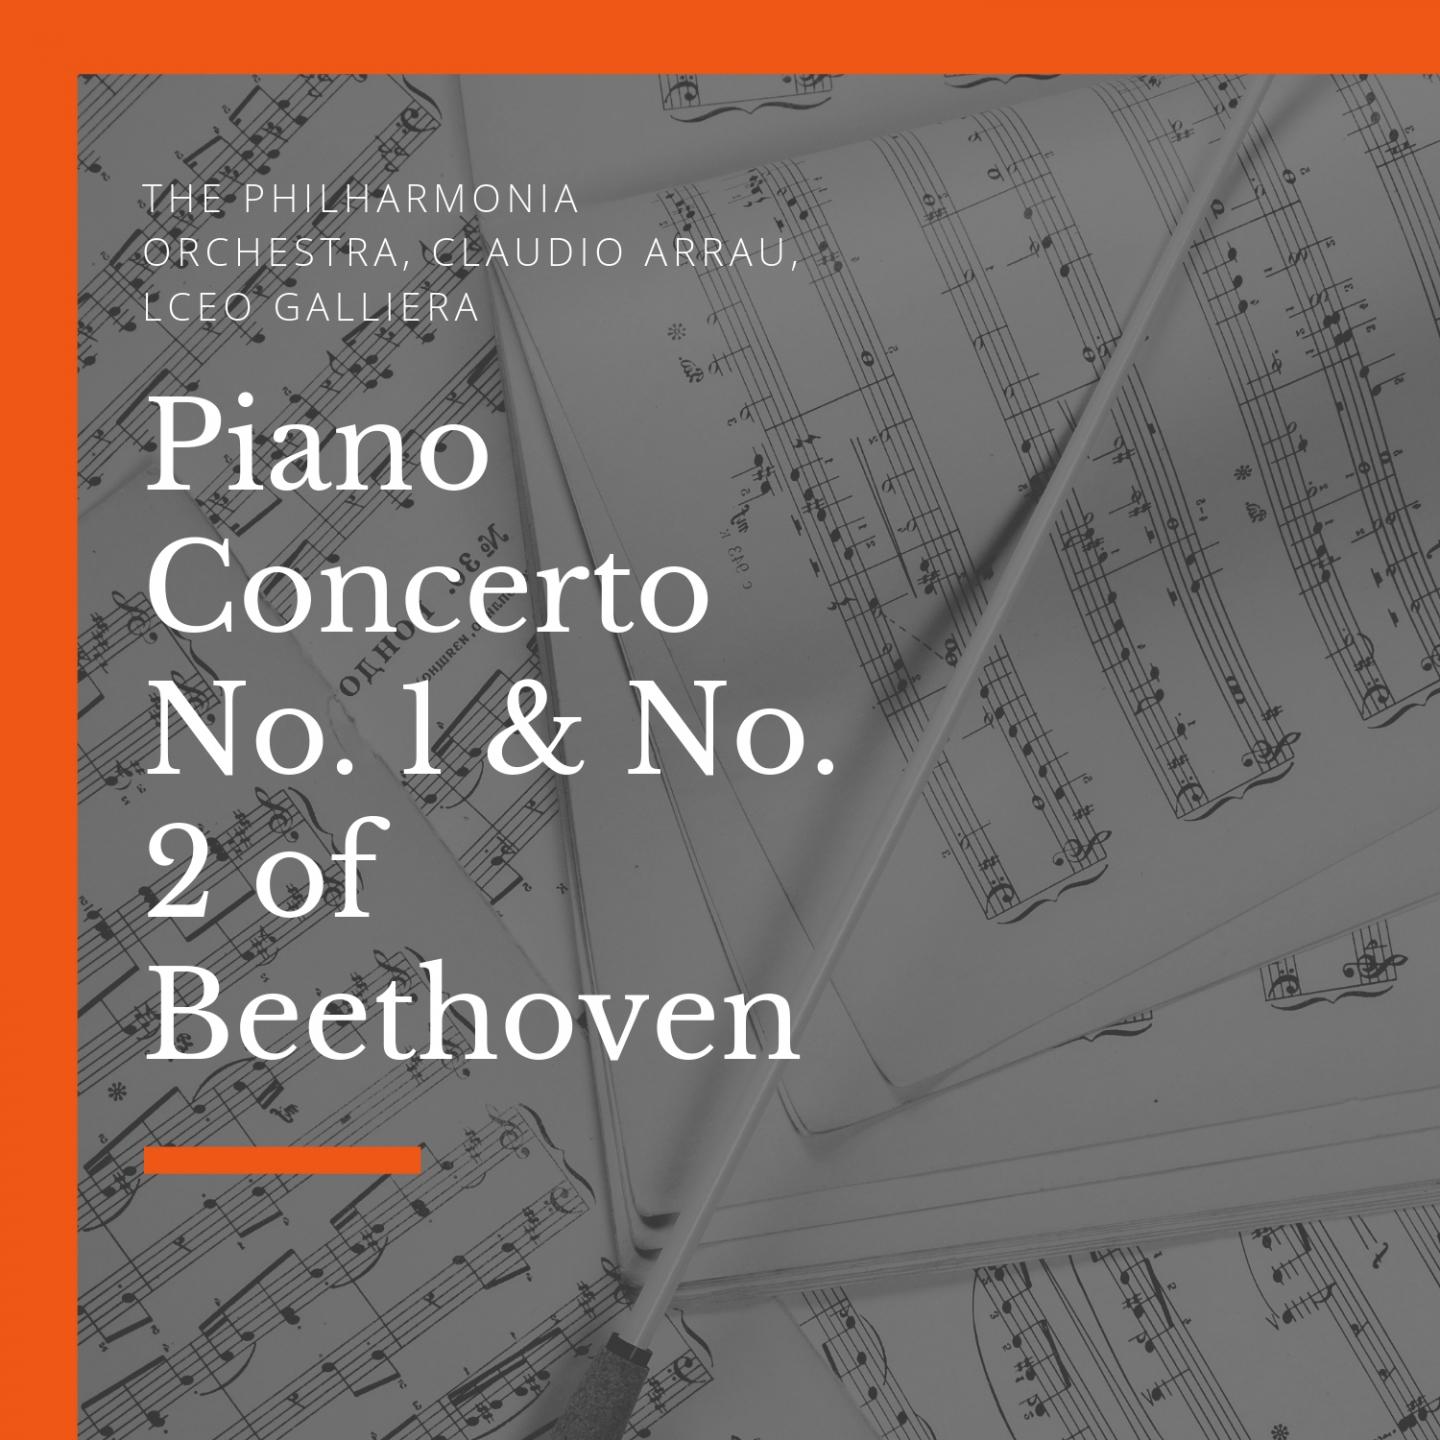 Piano Concerto No. 2, in B-Flat Major, Op. 19: II. Adagio